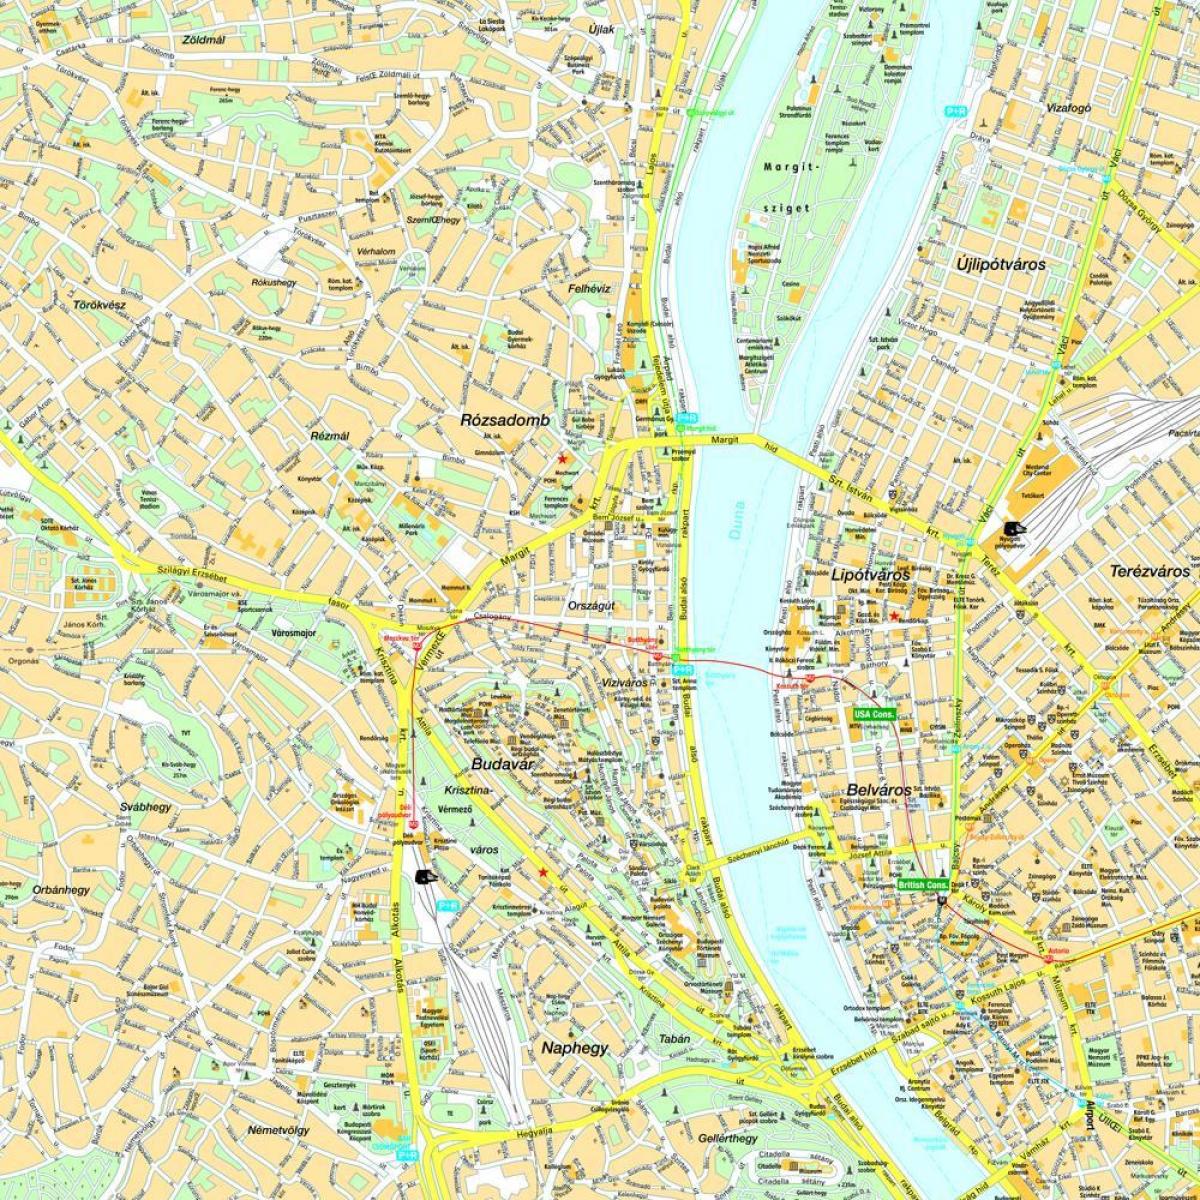 kart over budapest og området rundt